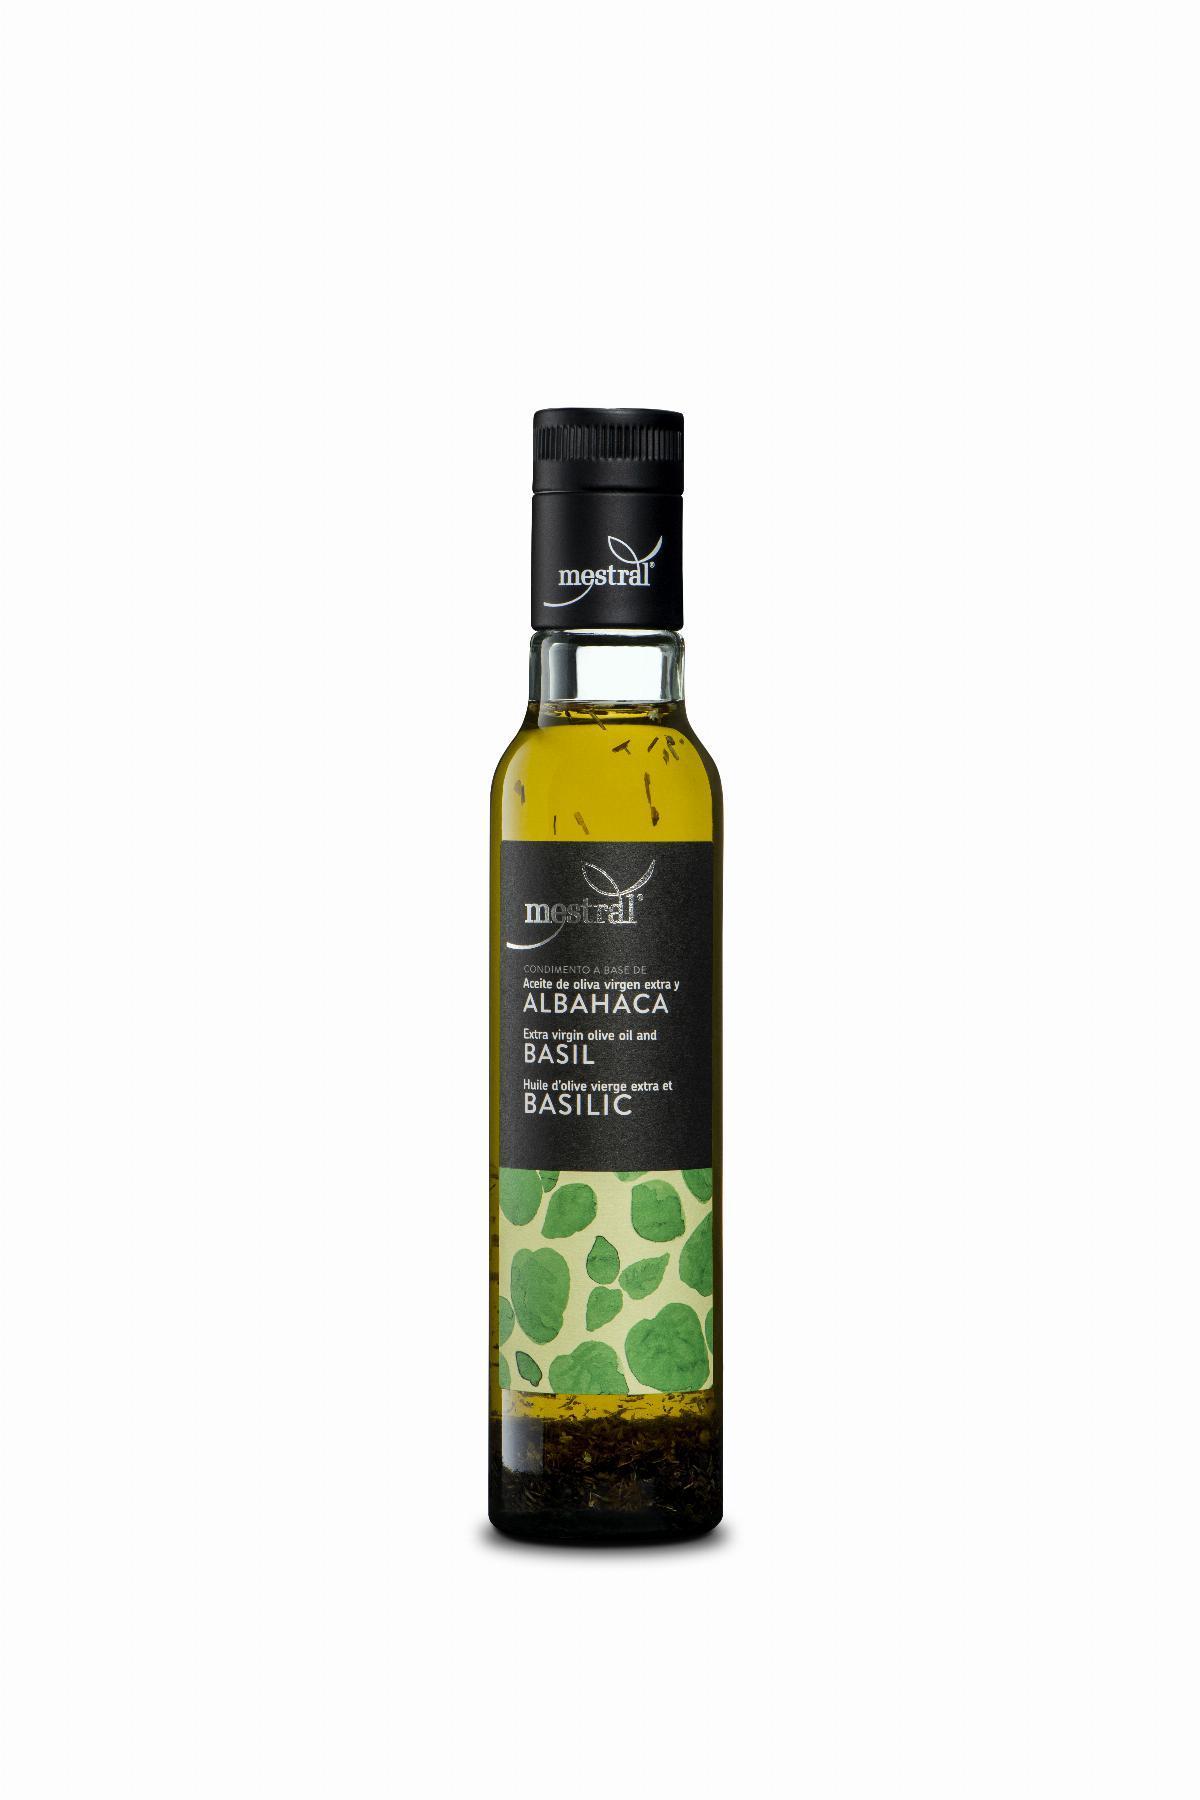 Aceites y Condimentos - Oli d'Oliva Verge Extra Mestral amb Alfàbrega, ampolla Dòrica transparent, 250ml, ES-EN-FR - Mestral Cambrils